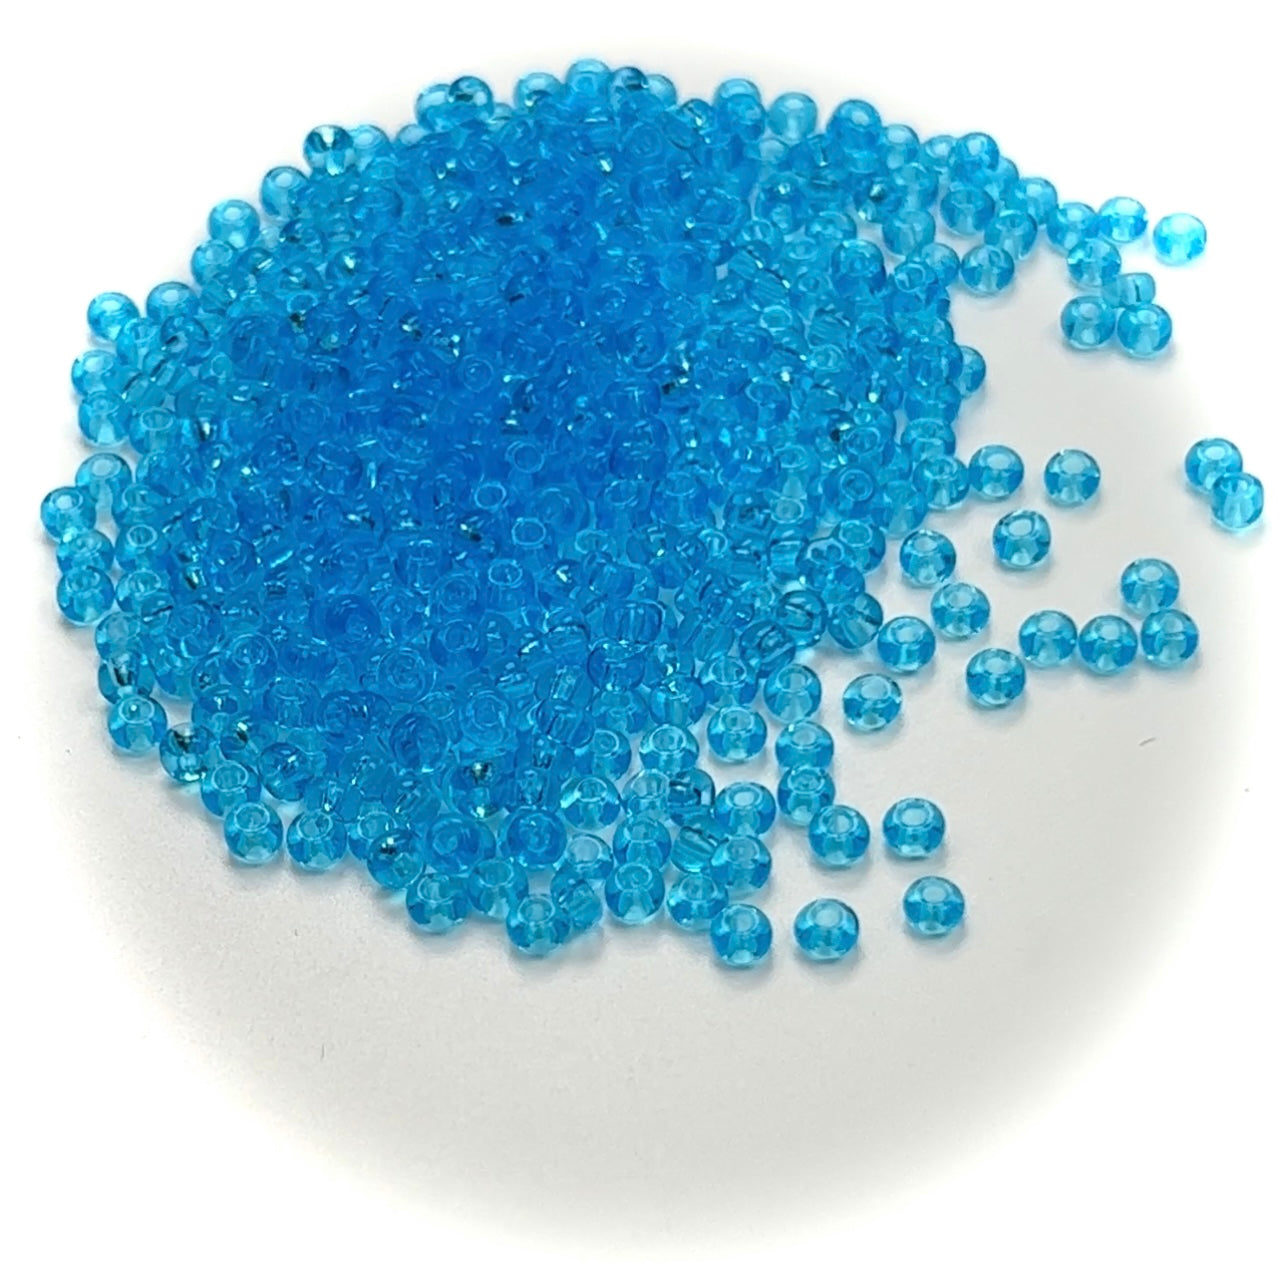 Rocailles size 8/0 (3mm) Aqua Blue, Preciosa Ornela Traditional Czech Glass Seed Beads, 30grams (1 oz), P982